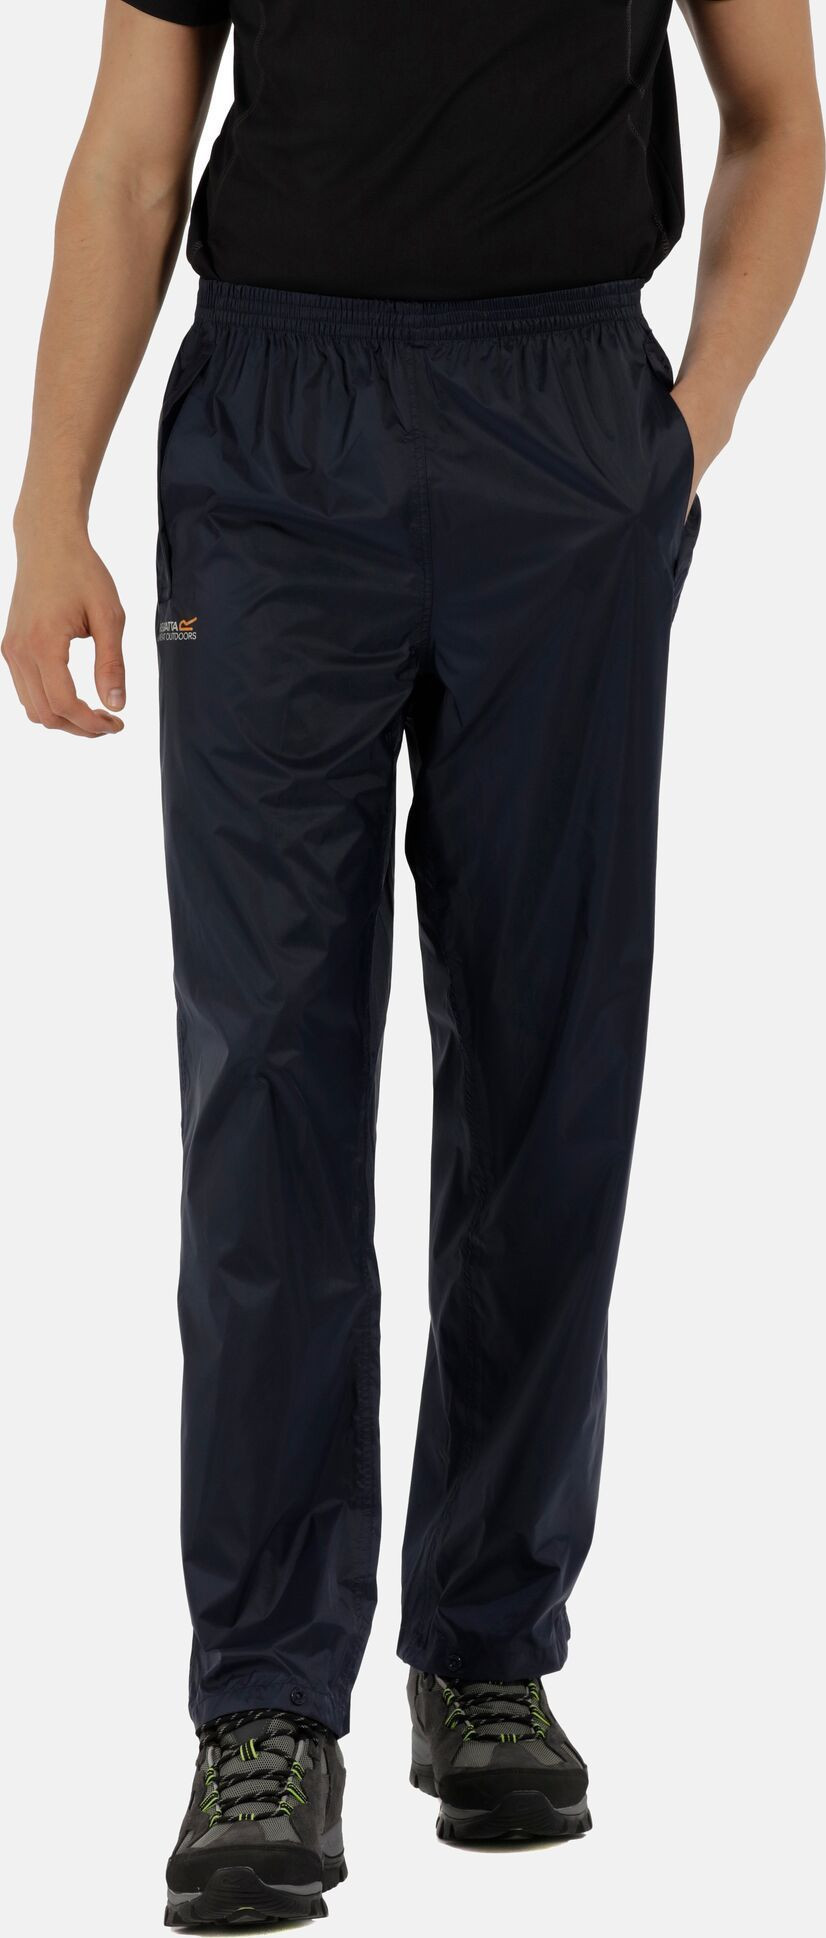 Pánské kalhoty Pack It Tmavě modré S model 18670017 - Regatta